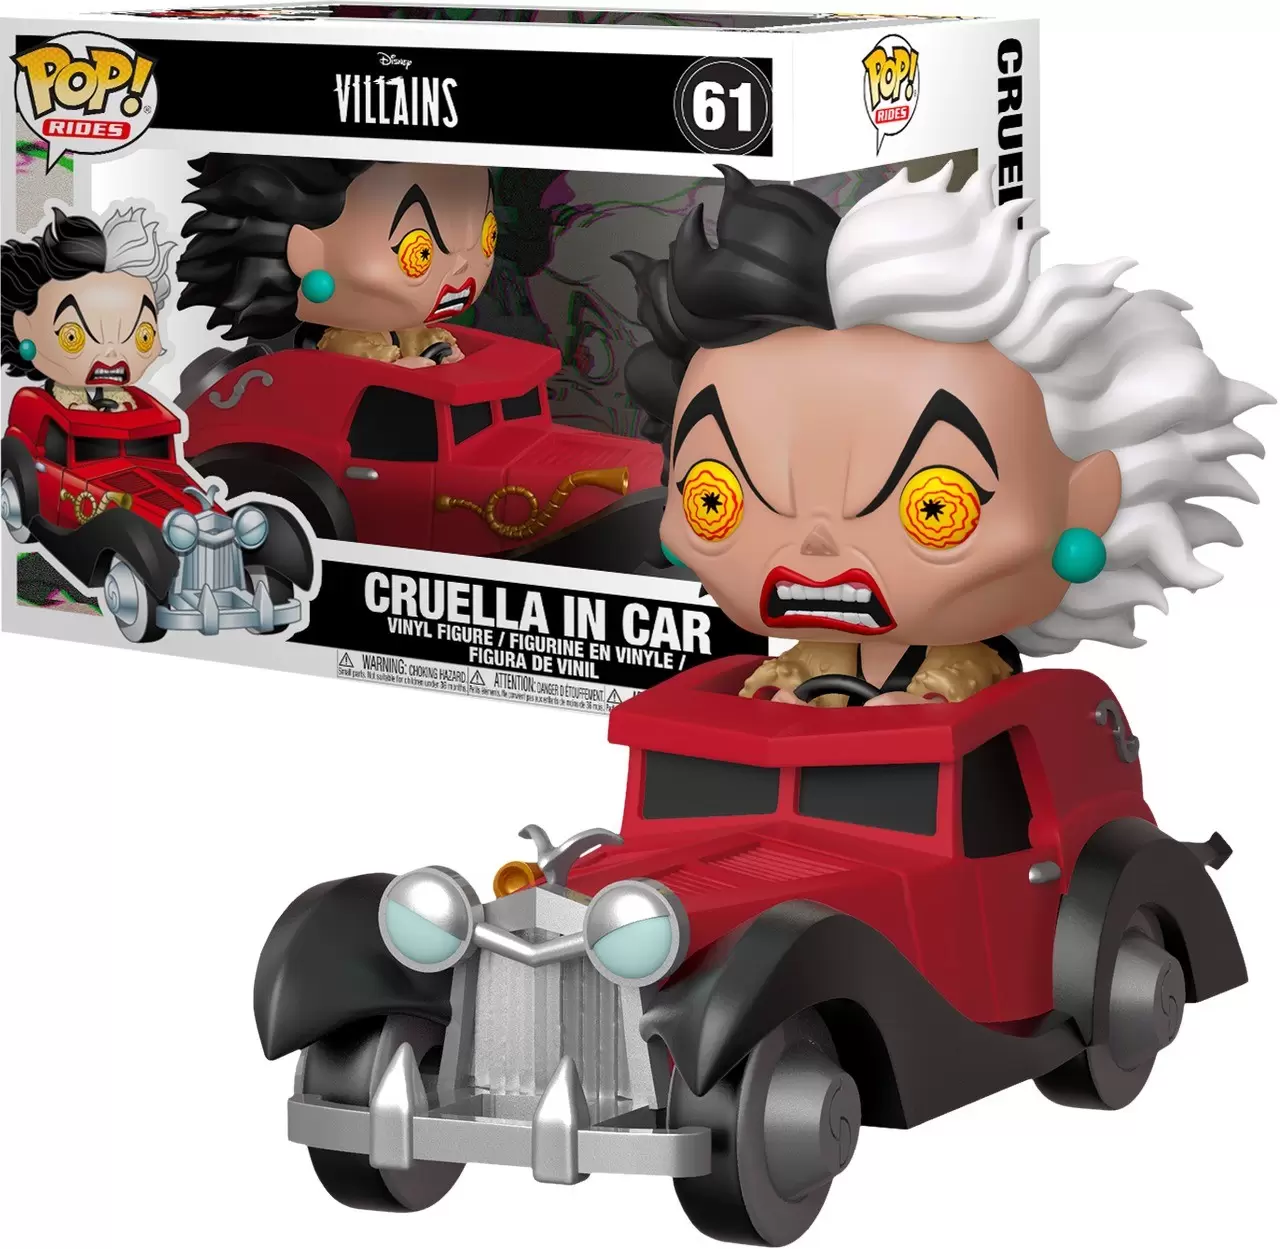 POP! Rides - Villains - Cruella in Car